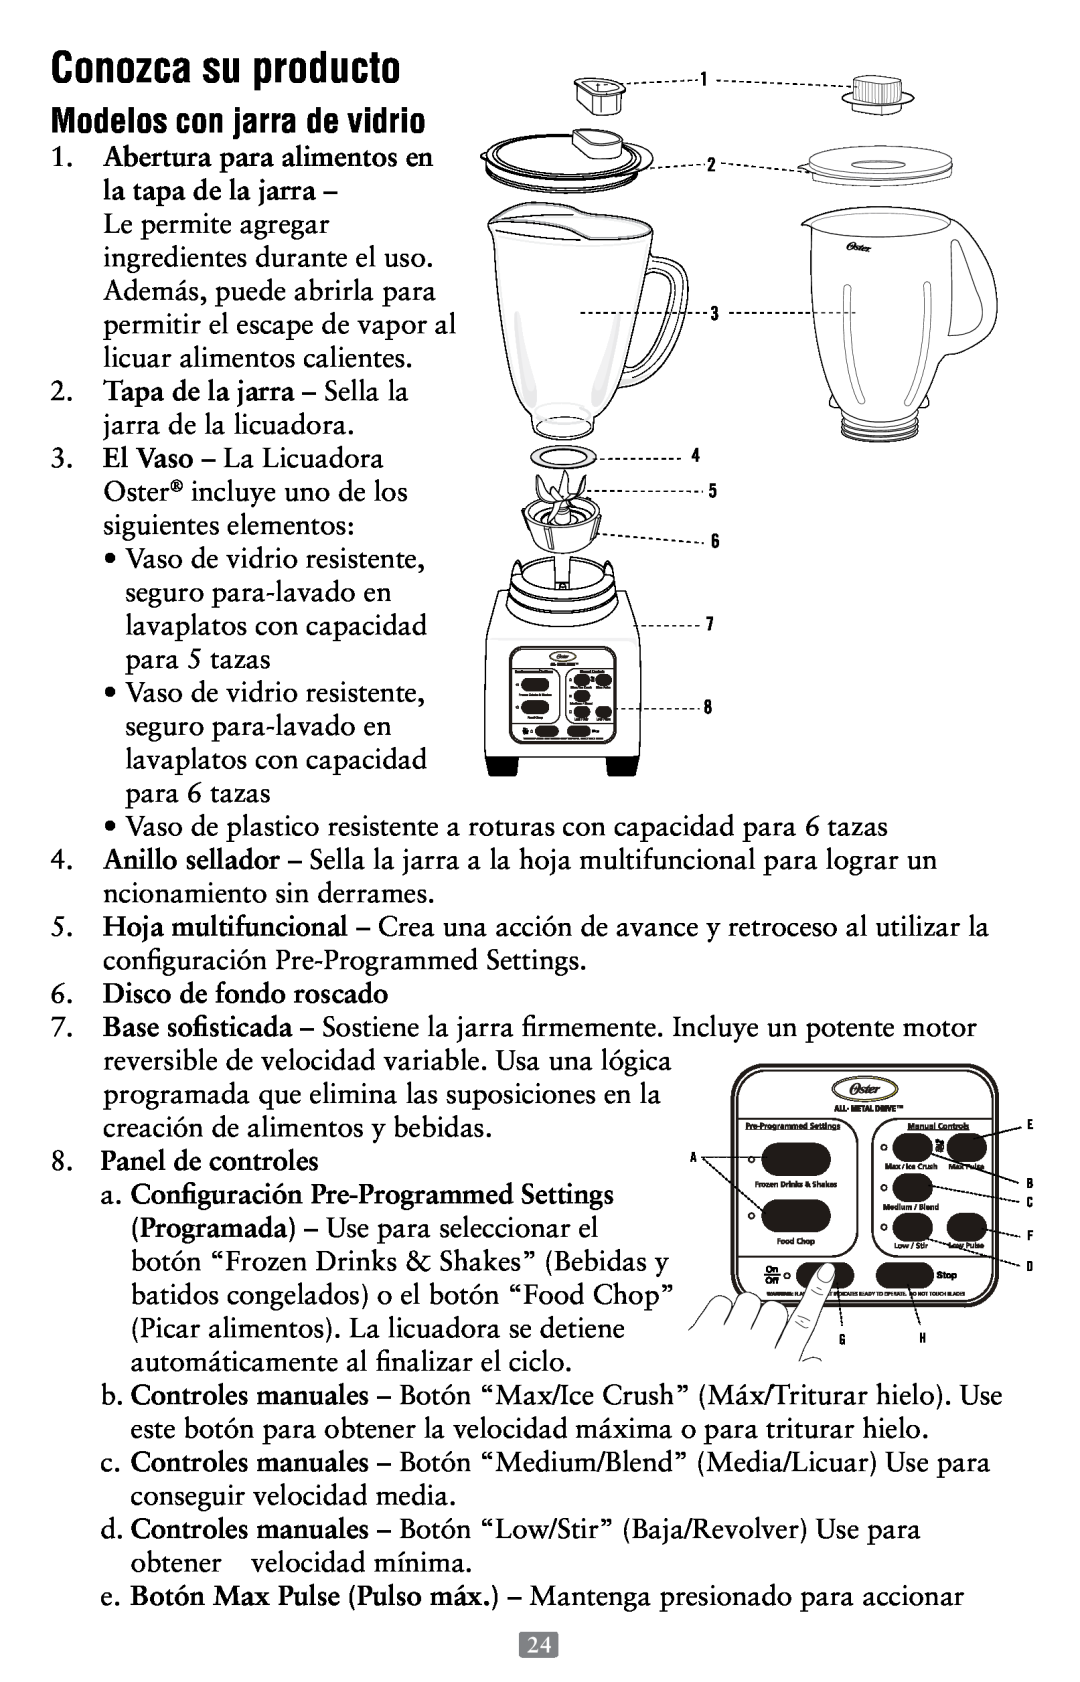 Oster P.N. 118532-005-000 Conozca su producto, Modelos con jarra de vidrio, Abertura para alimentos en, Panel de controles 